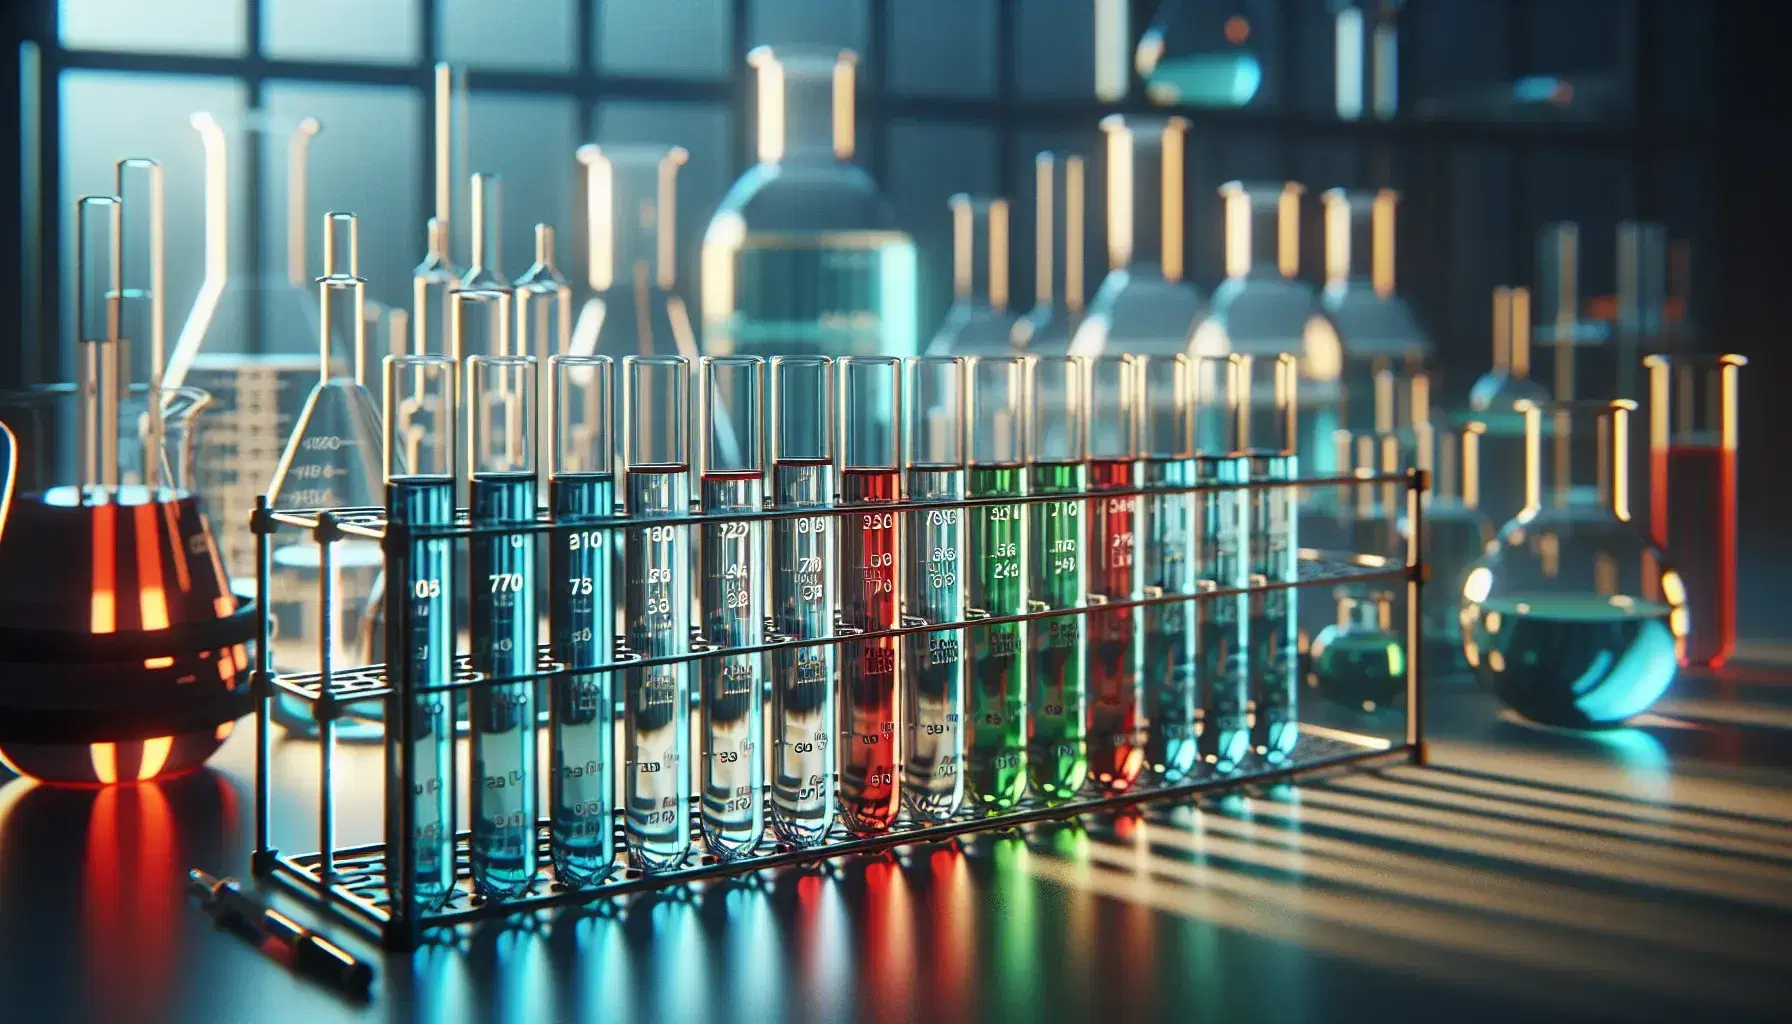 Tubos de ensayo de vidrio con líquidos de colores variados en un soporte metálico, indicativos de experimentos de metabolismo energético en un laboratorio.